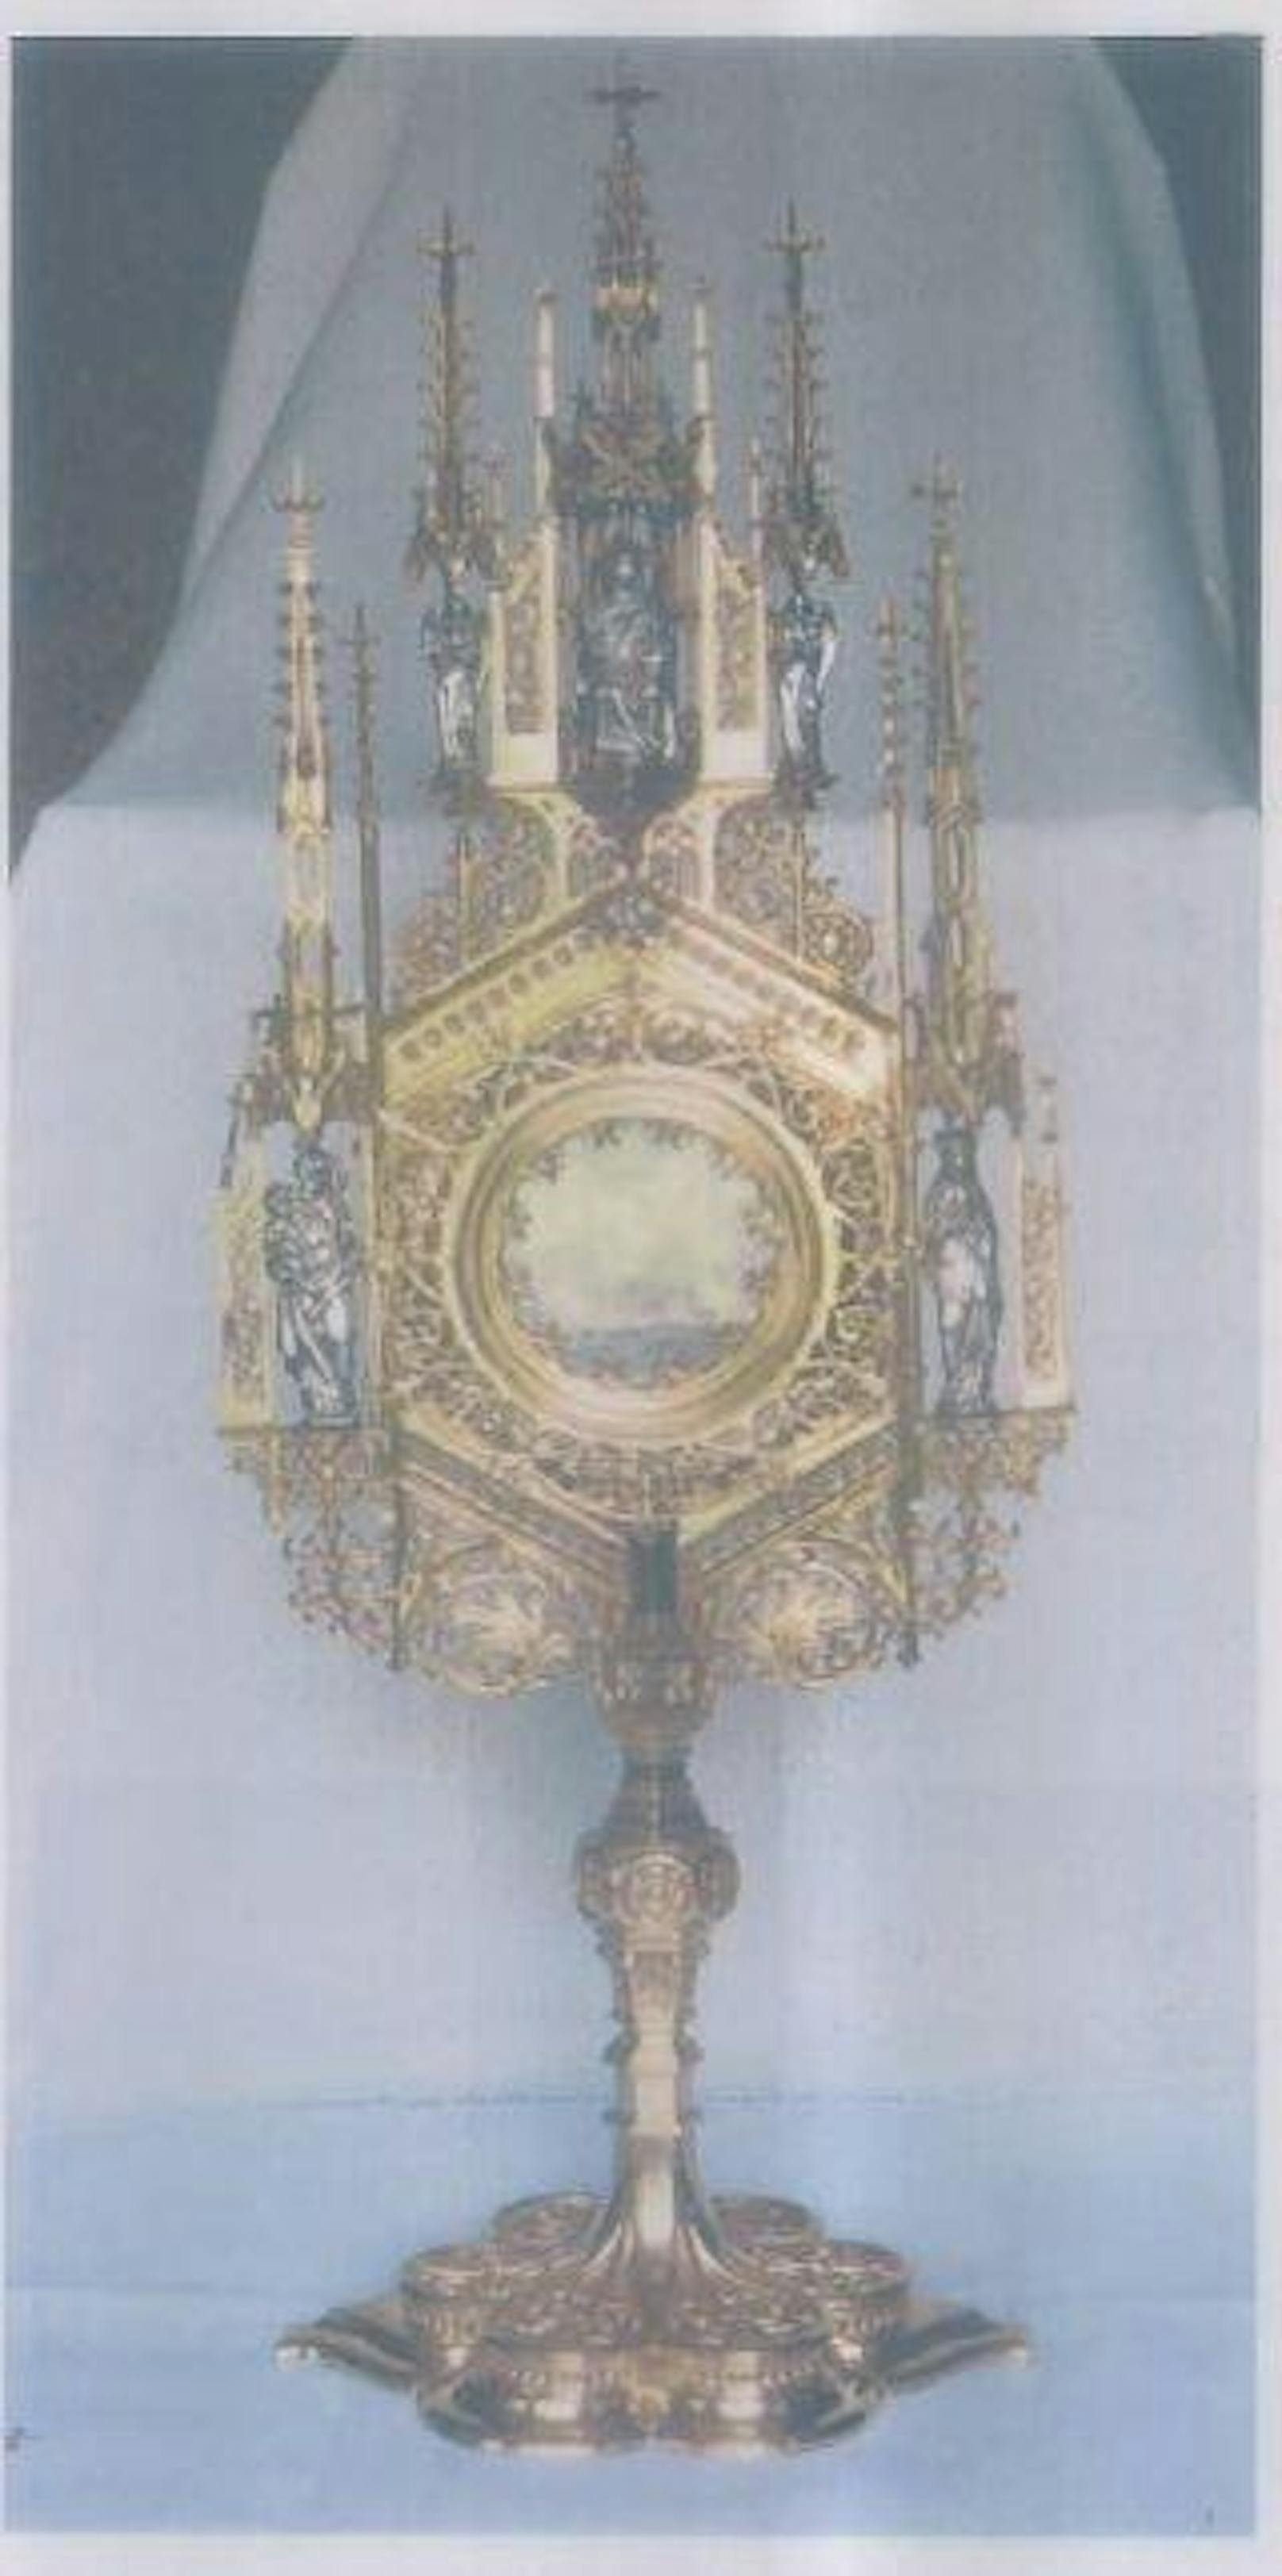 Diebe räumten in der Pfarre St. Severin in Wien-Währing einen eingemauerten Tresor aus. Beute: drei Goldmonstranzen, 47 Einzelreliquien und eine antike Schatulle. Gesamtschaden: 53.700 Euro.